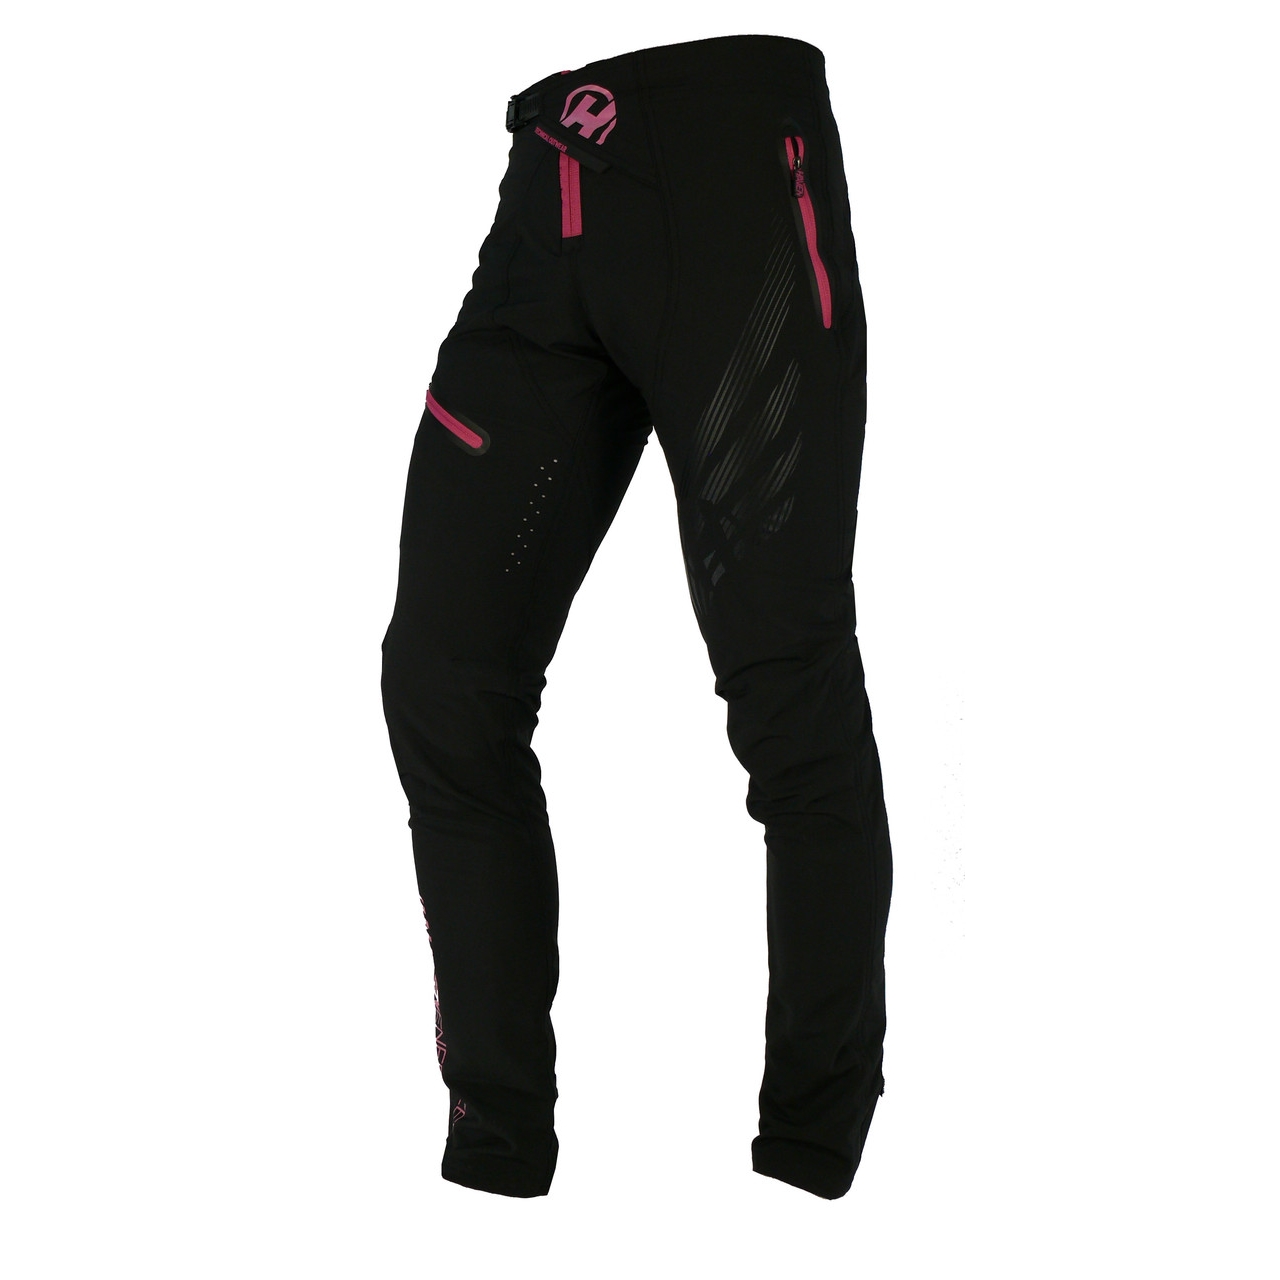 Kalhoty unisex Haven Energizer - černé-růžové, XL